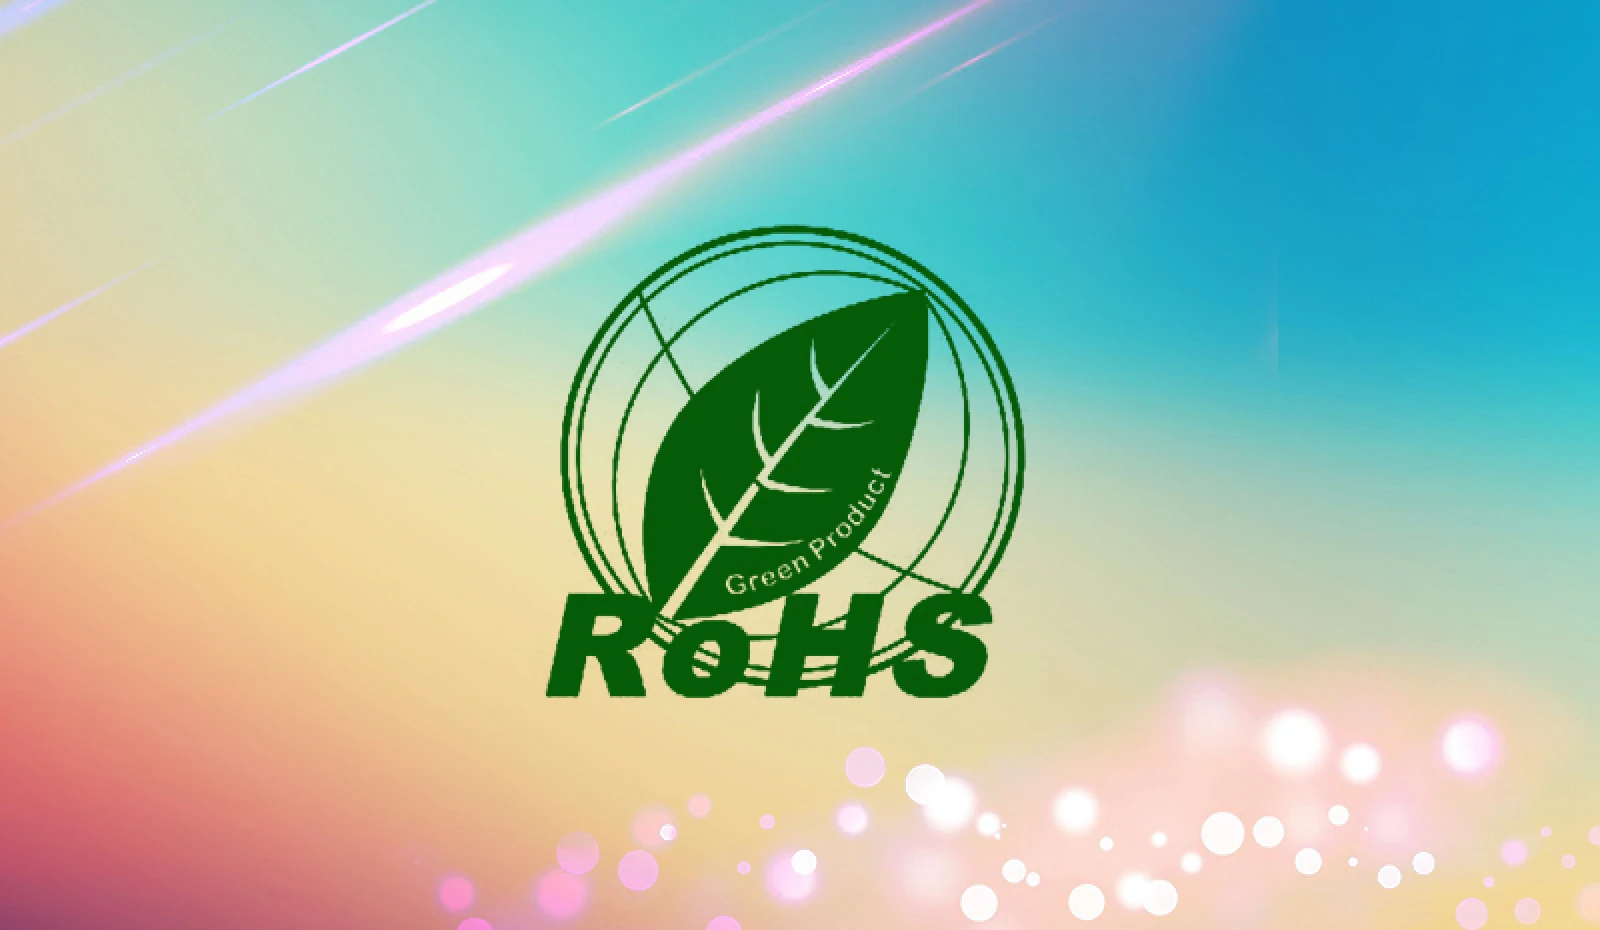 استاندارد RoHS چیست؟